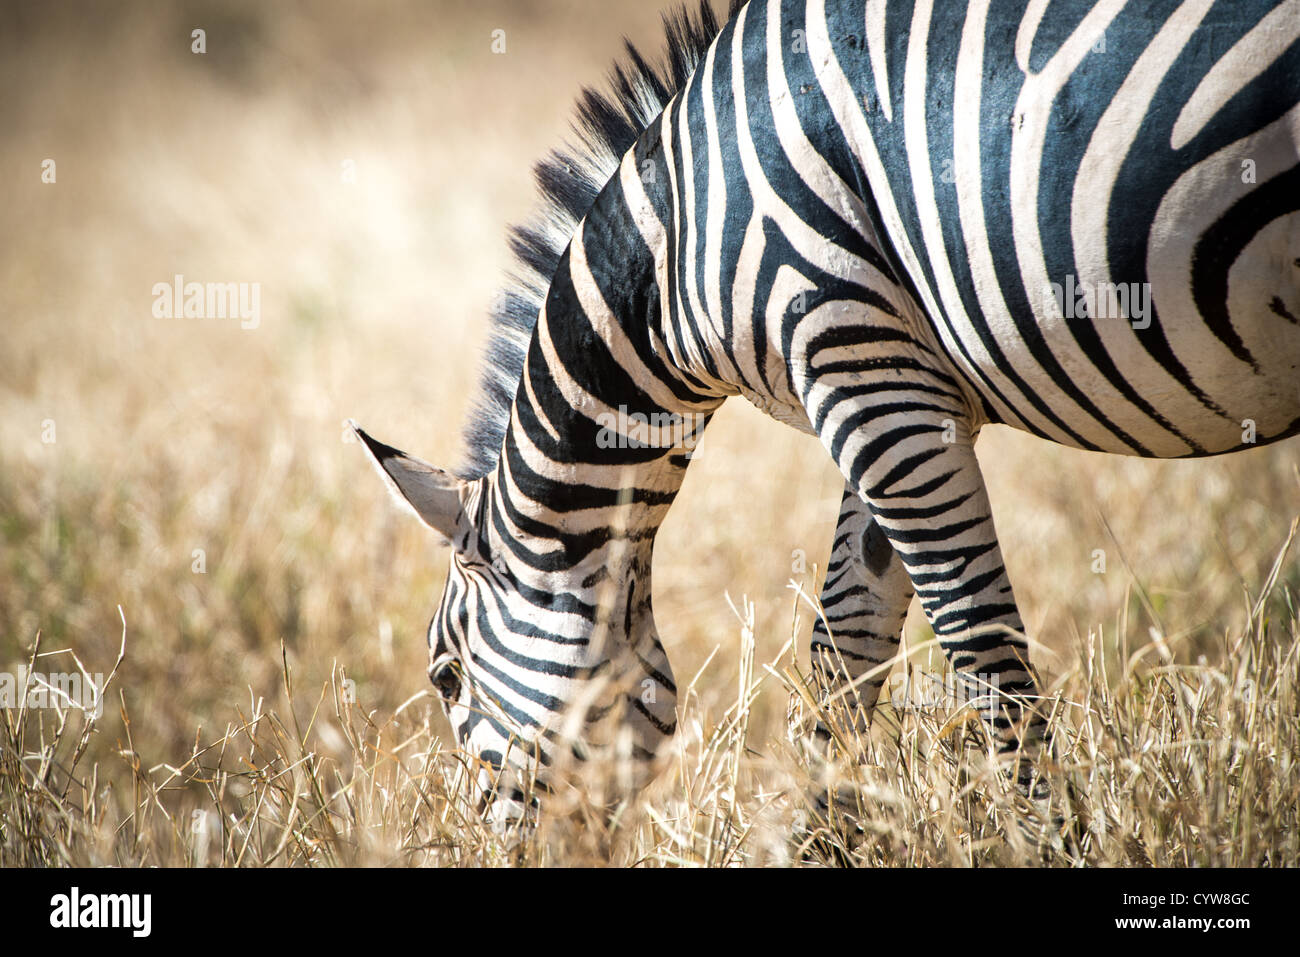 Der Tarangire National Park, Tansania - ein Zebra weidet in der Tarangire National Park im Norden von Tansania, nicht weit von den Ngorongoro Krater und die Serengeti. Stockfoto